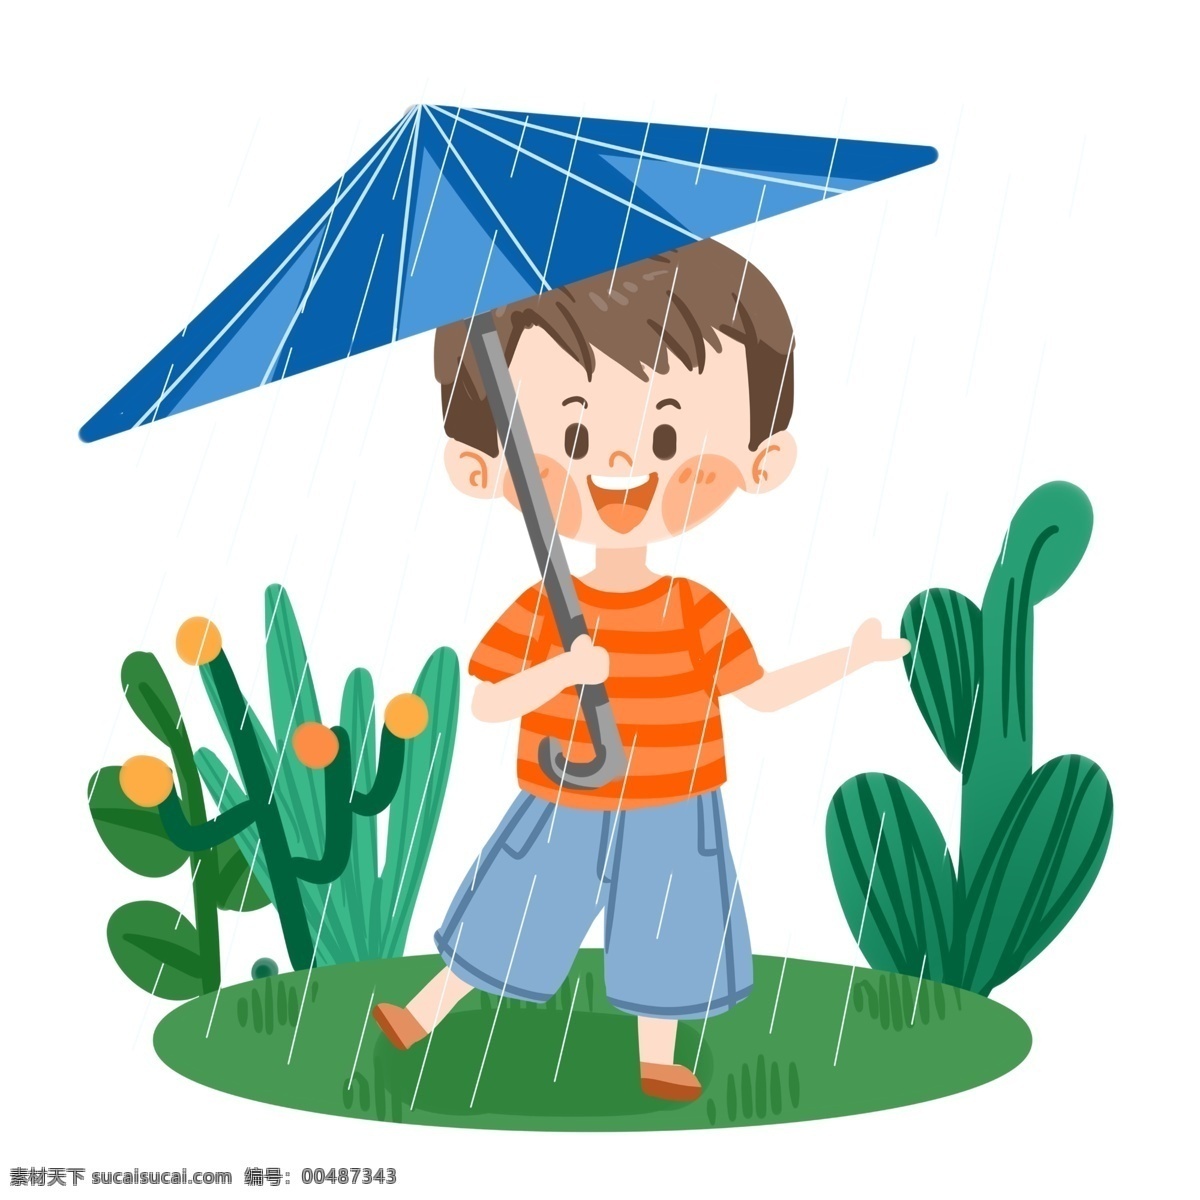 夏日 可爱 男孩 雨 中 打伞 开心 星星 下雨 草地 绿植